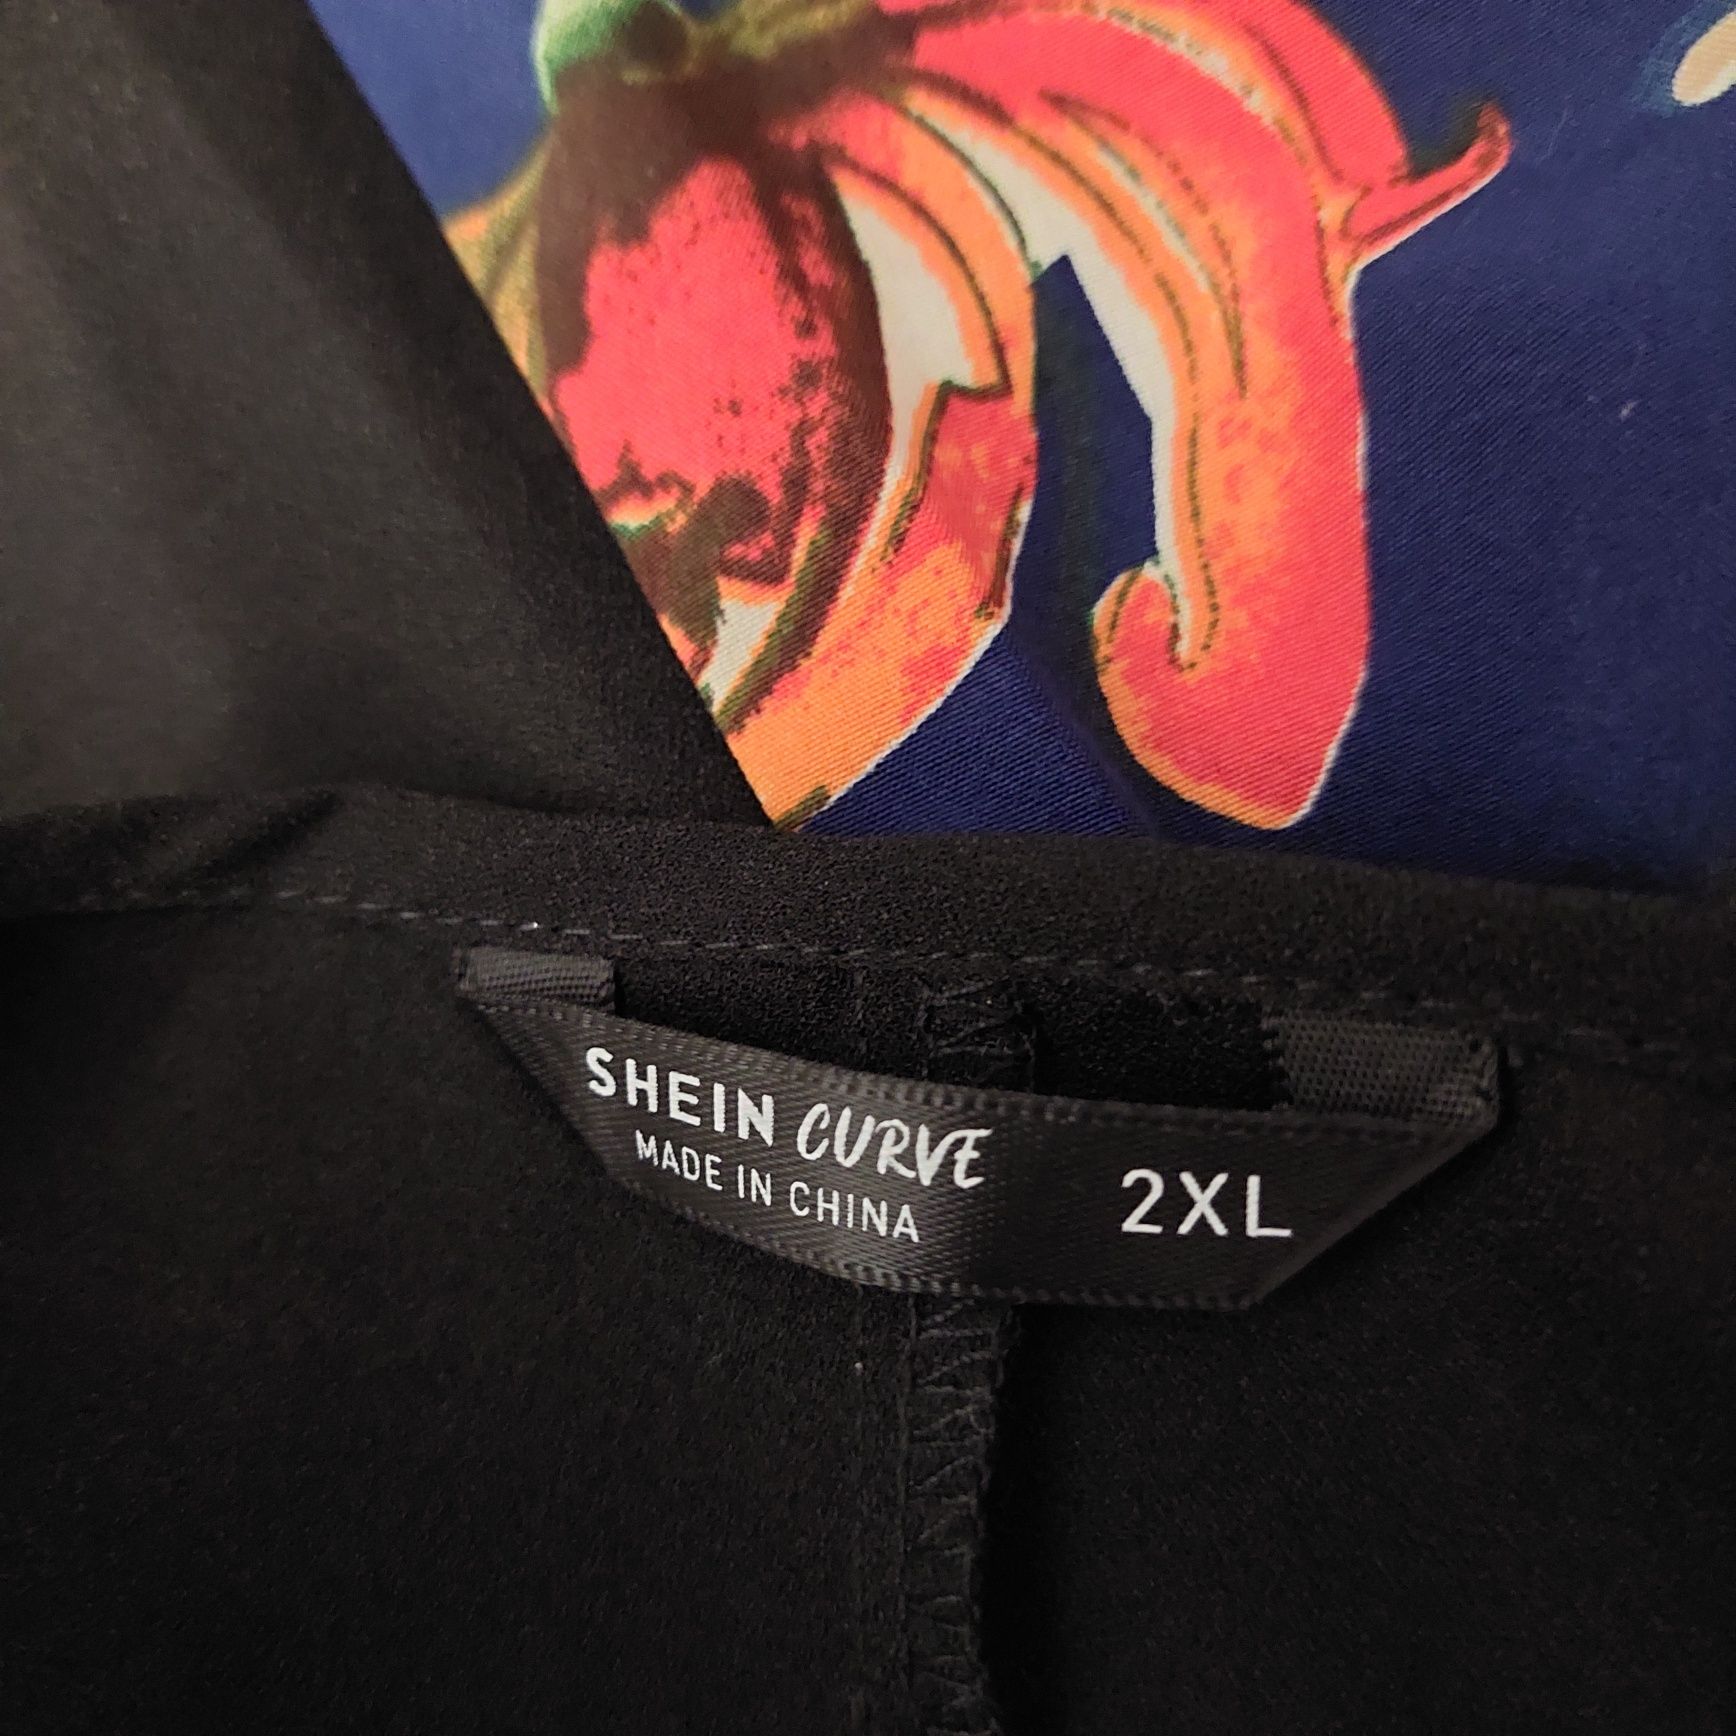 Sukienka Shein  Curve 2XL r.48, 50 Nowa